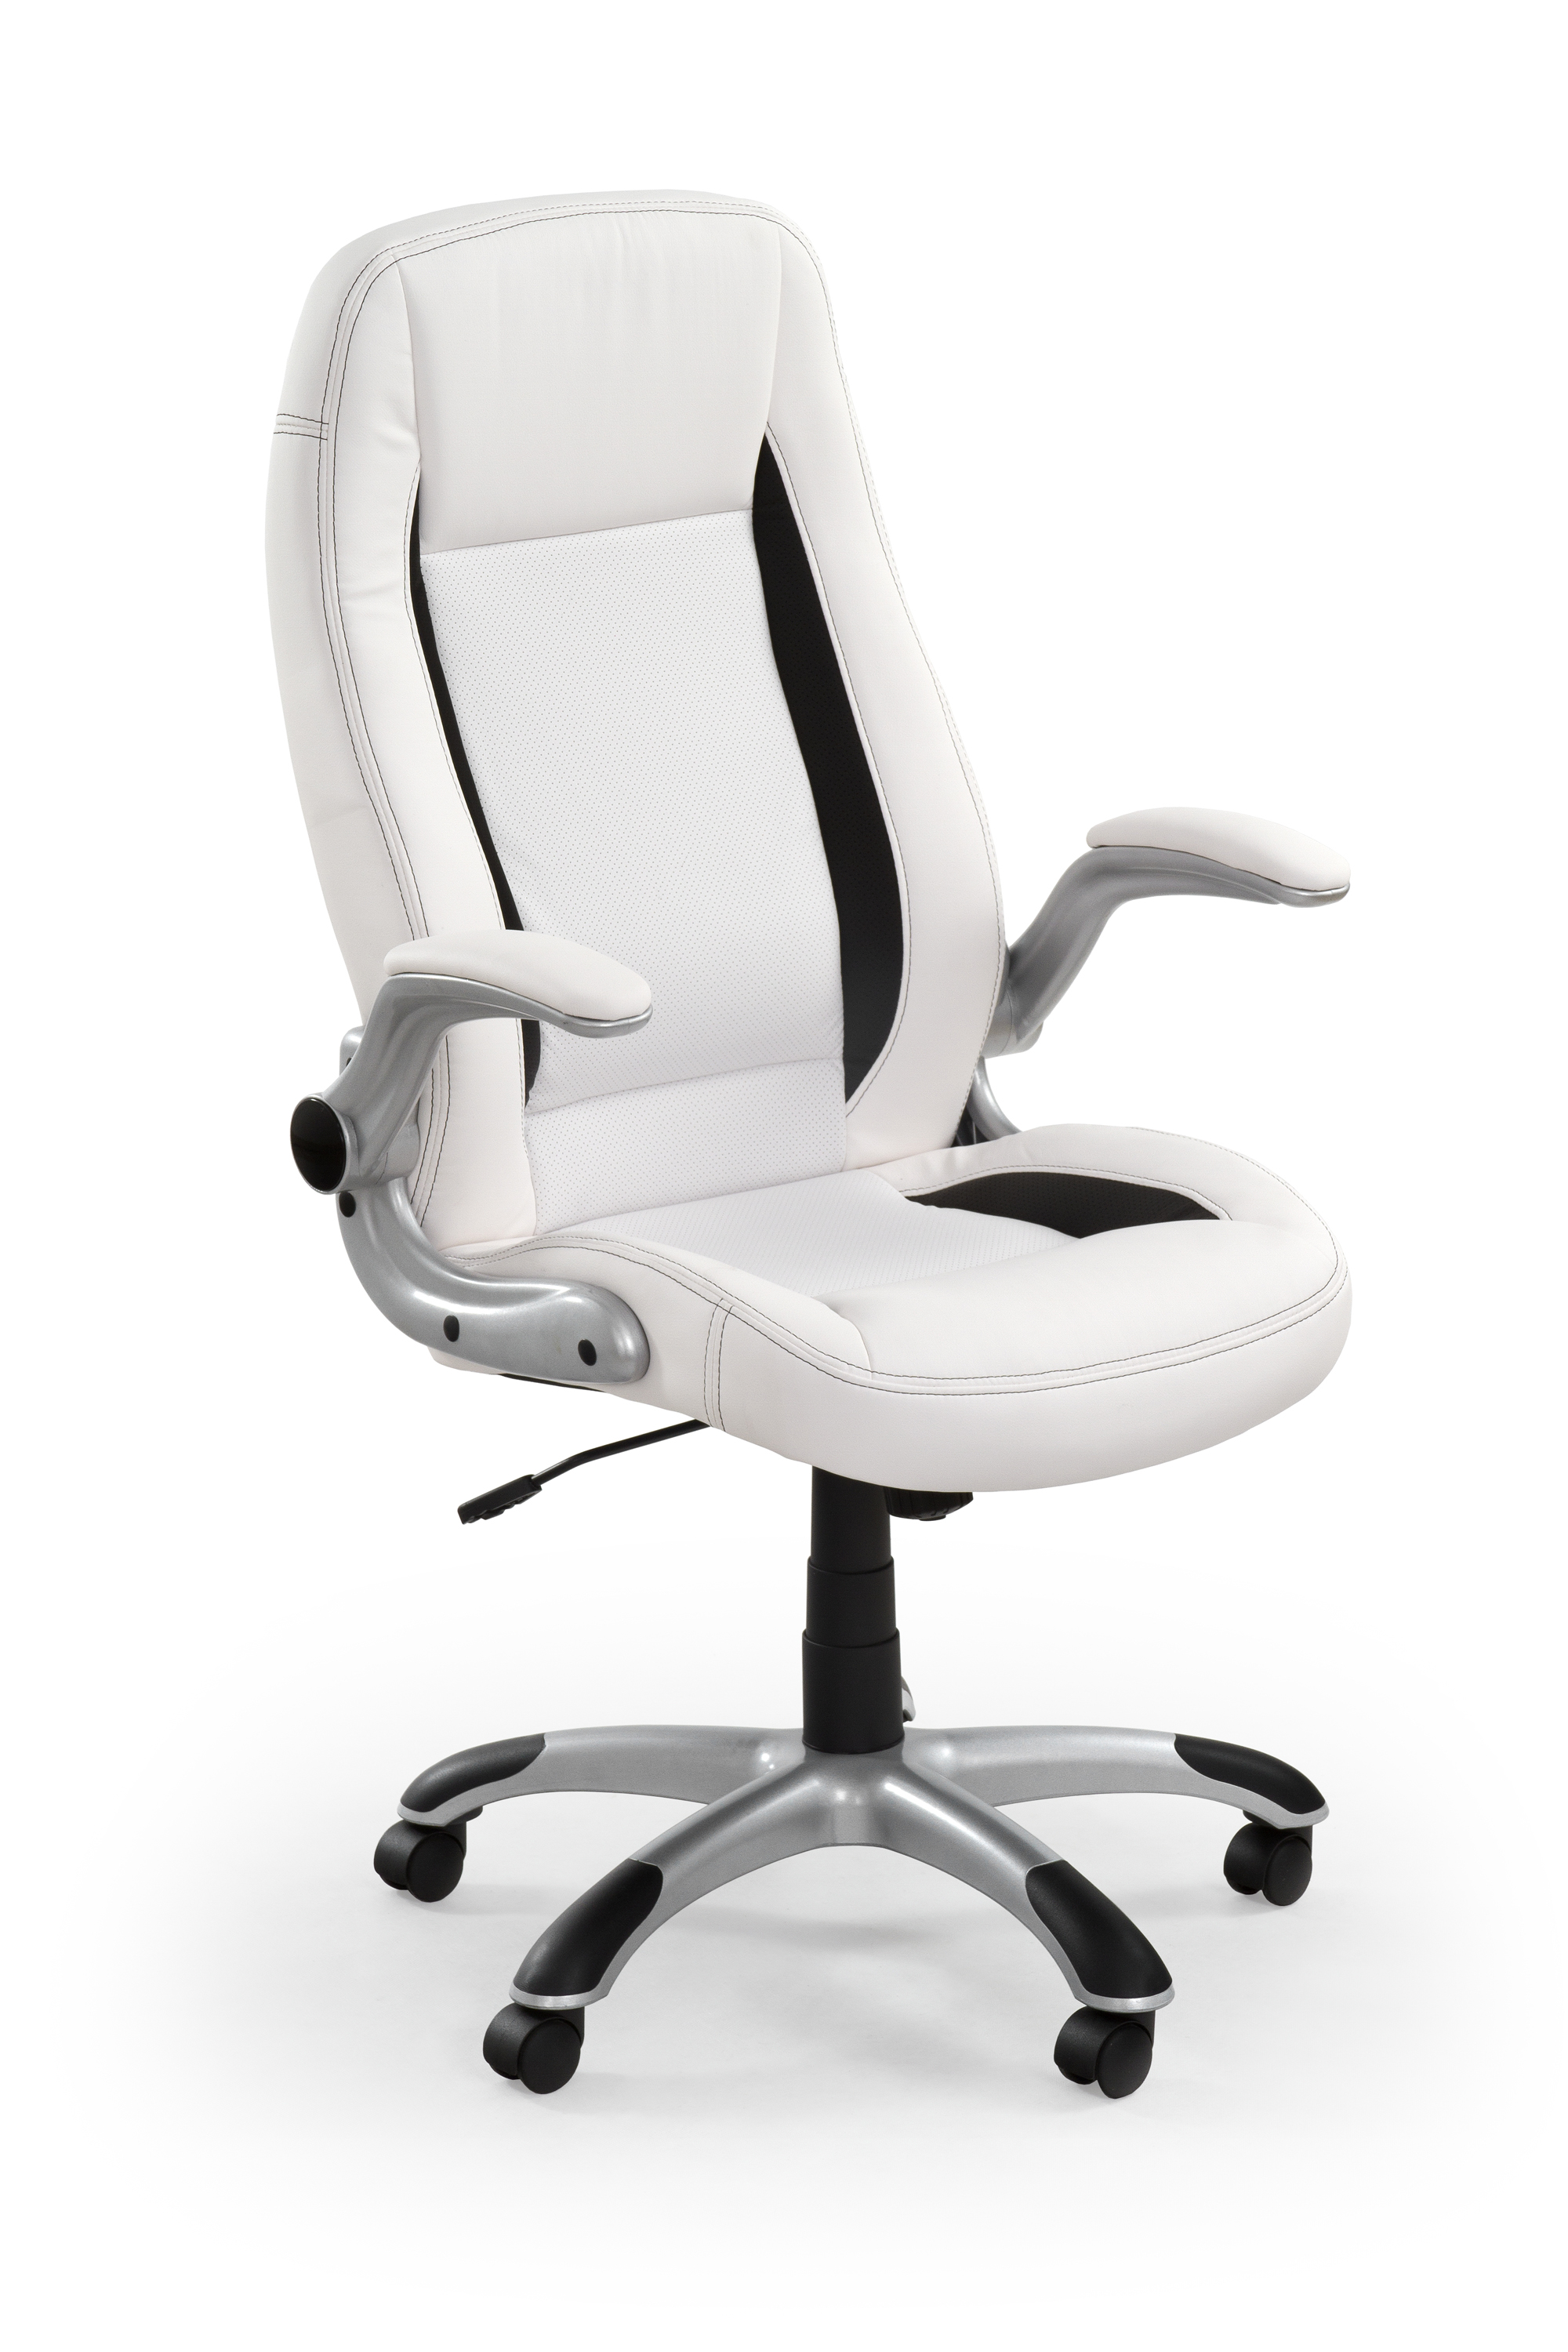 Офисные кресла омск. Компьютерное кресло белое Halmar Сатурн. Кресло офисное q-087 Signal bialy(белый). Кресло руководителя "Сатурн". Кресло Saturn pl.